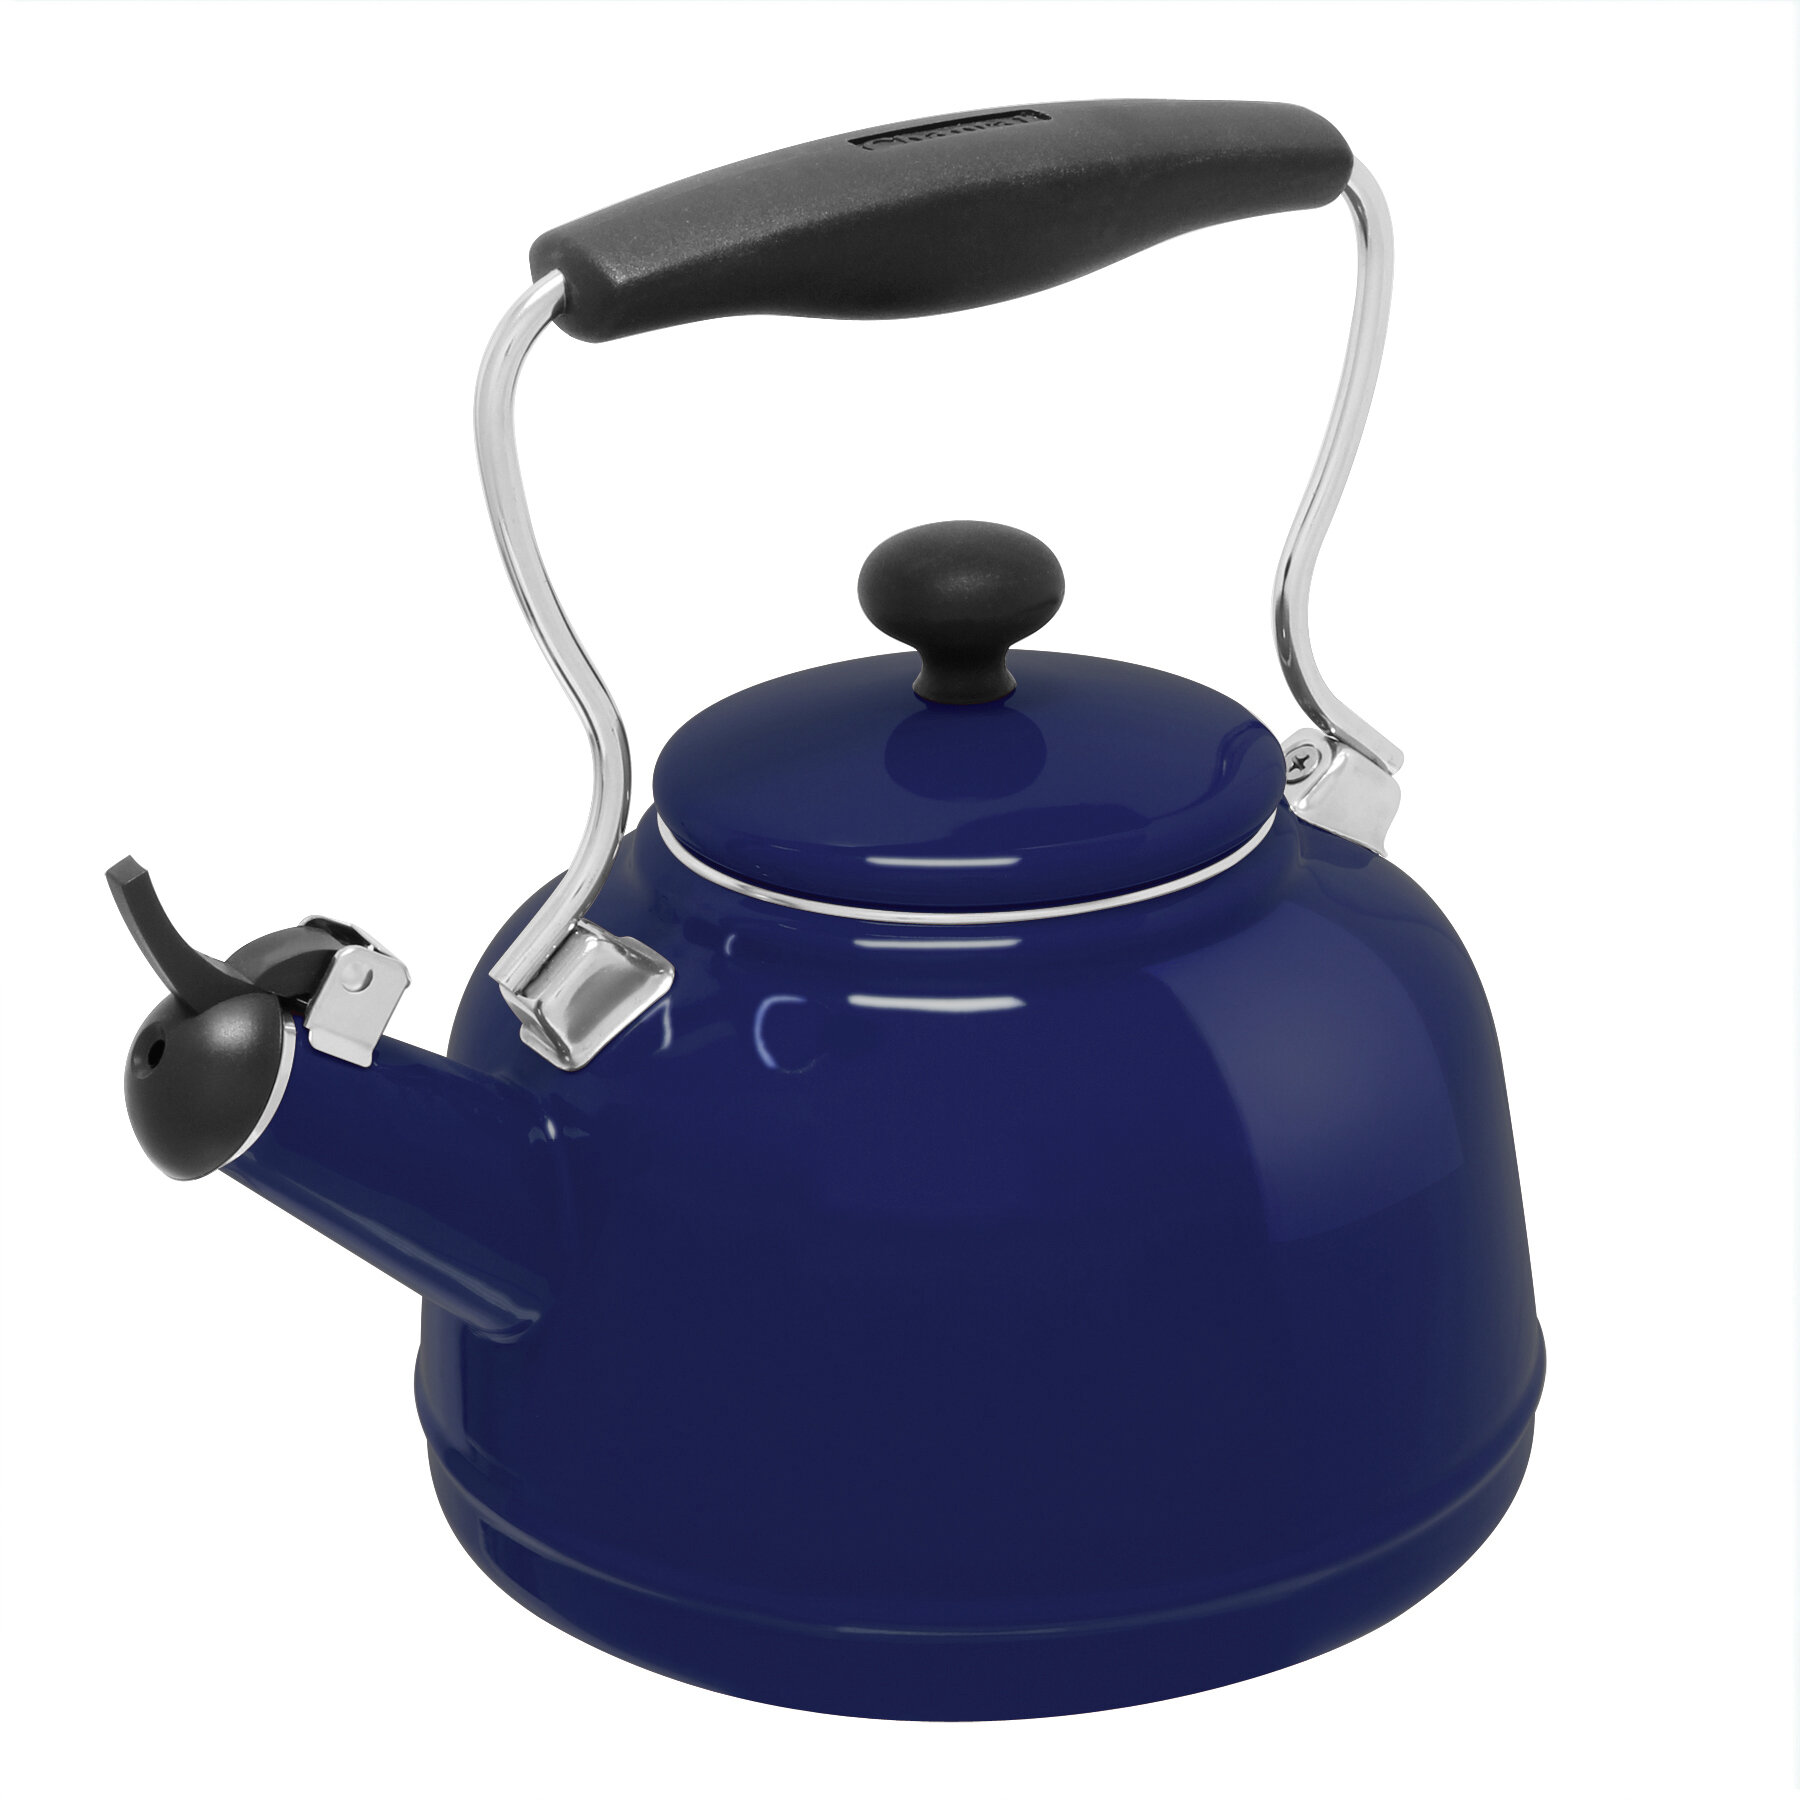 https://assets.wfcdn.com/im/86108901/compr-r85/9487/94876140/chantal-vintage-17-quarts-enamelware-whistling-stovetop-tea-kettle.jpg